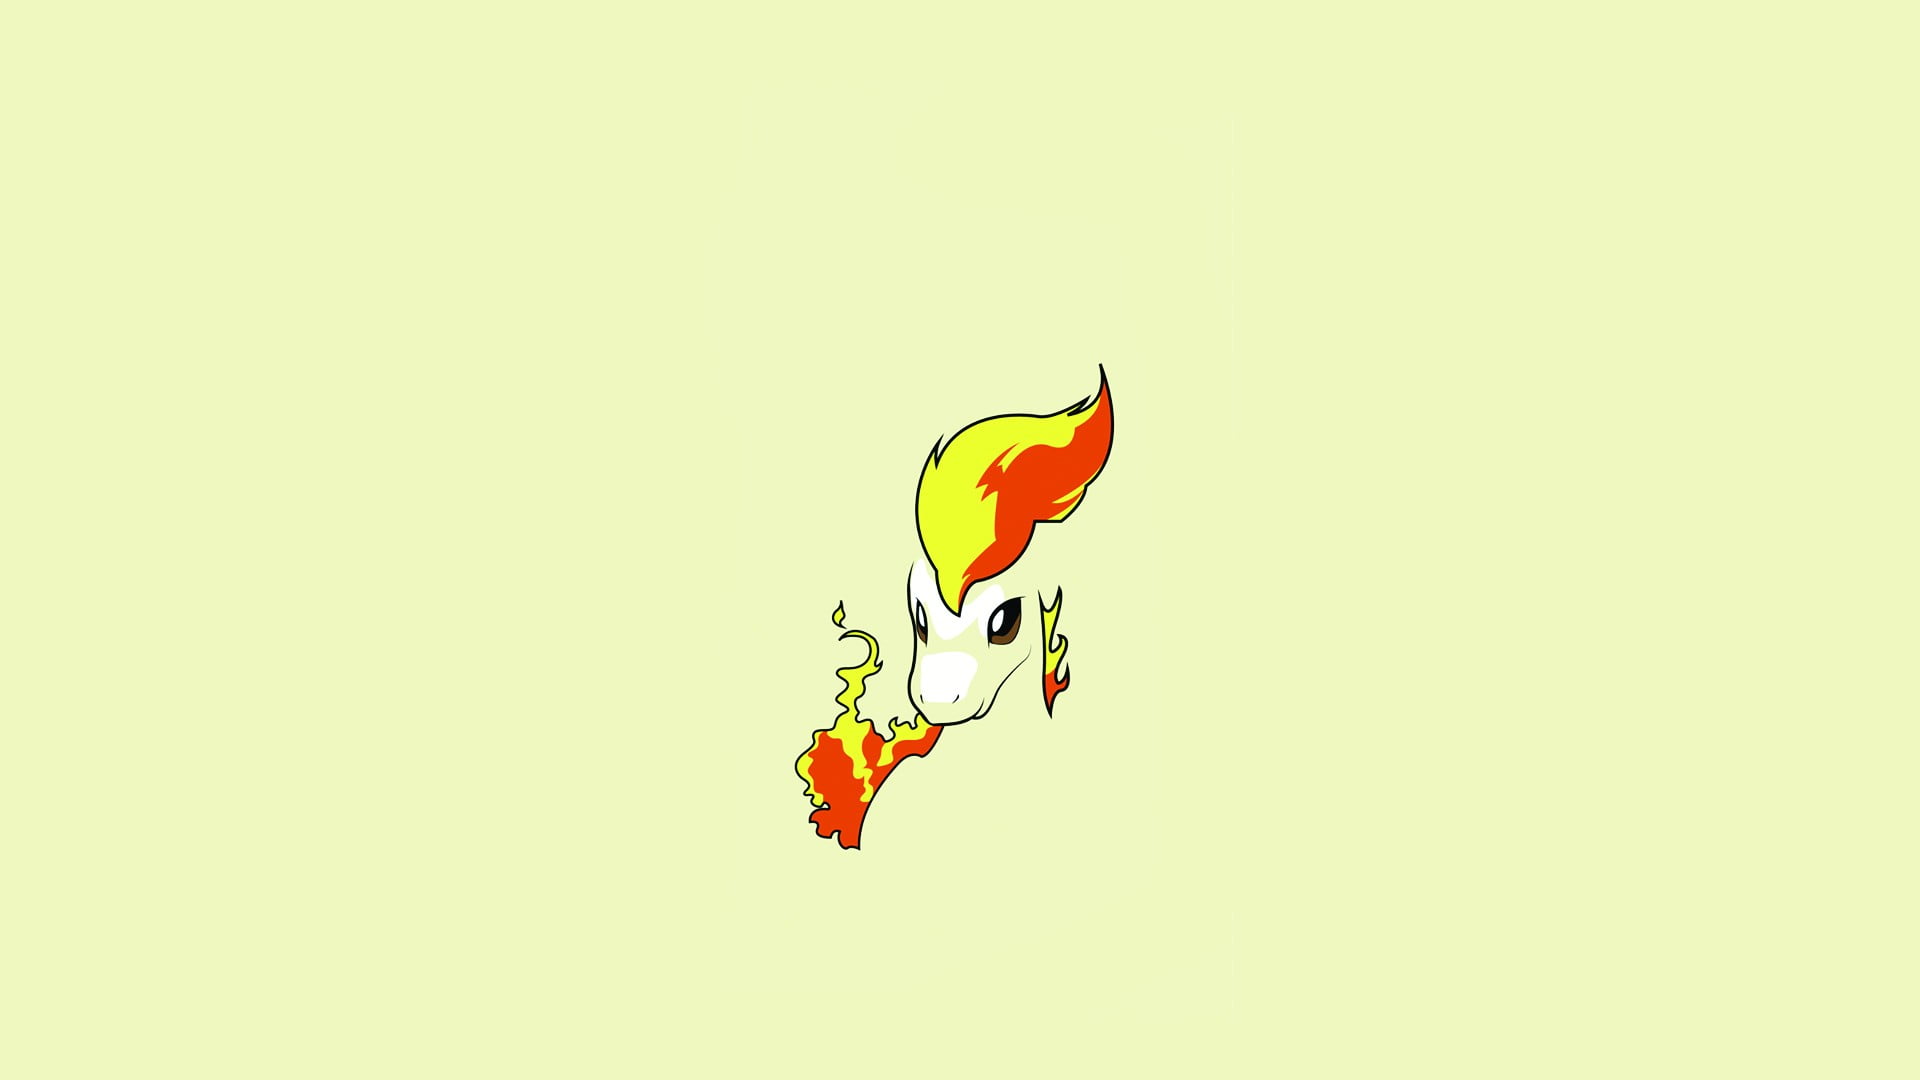 Pokemon character illustration, Pokémon